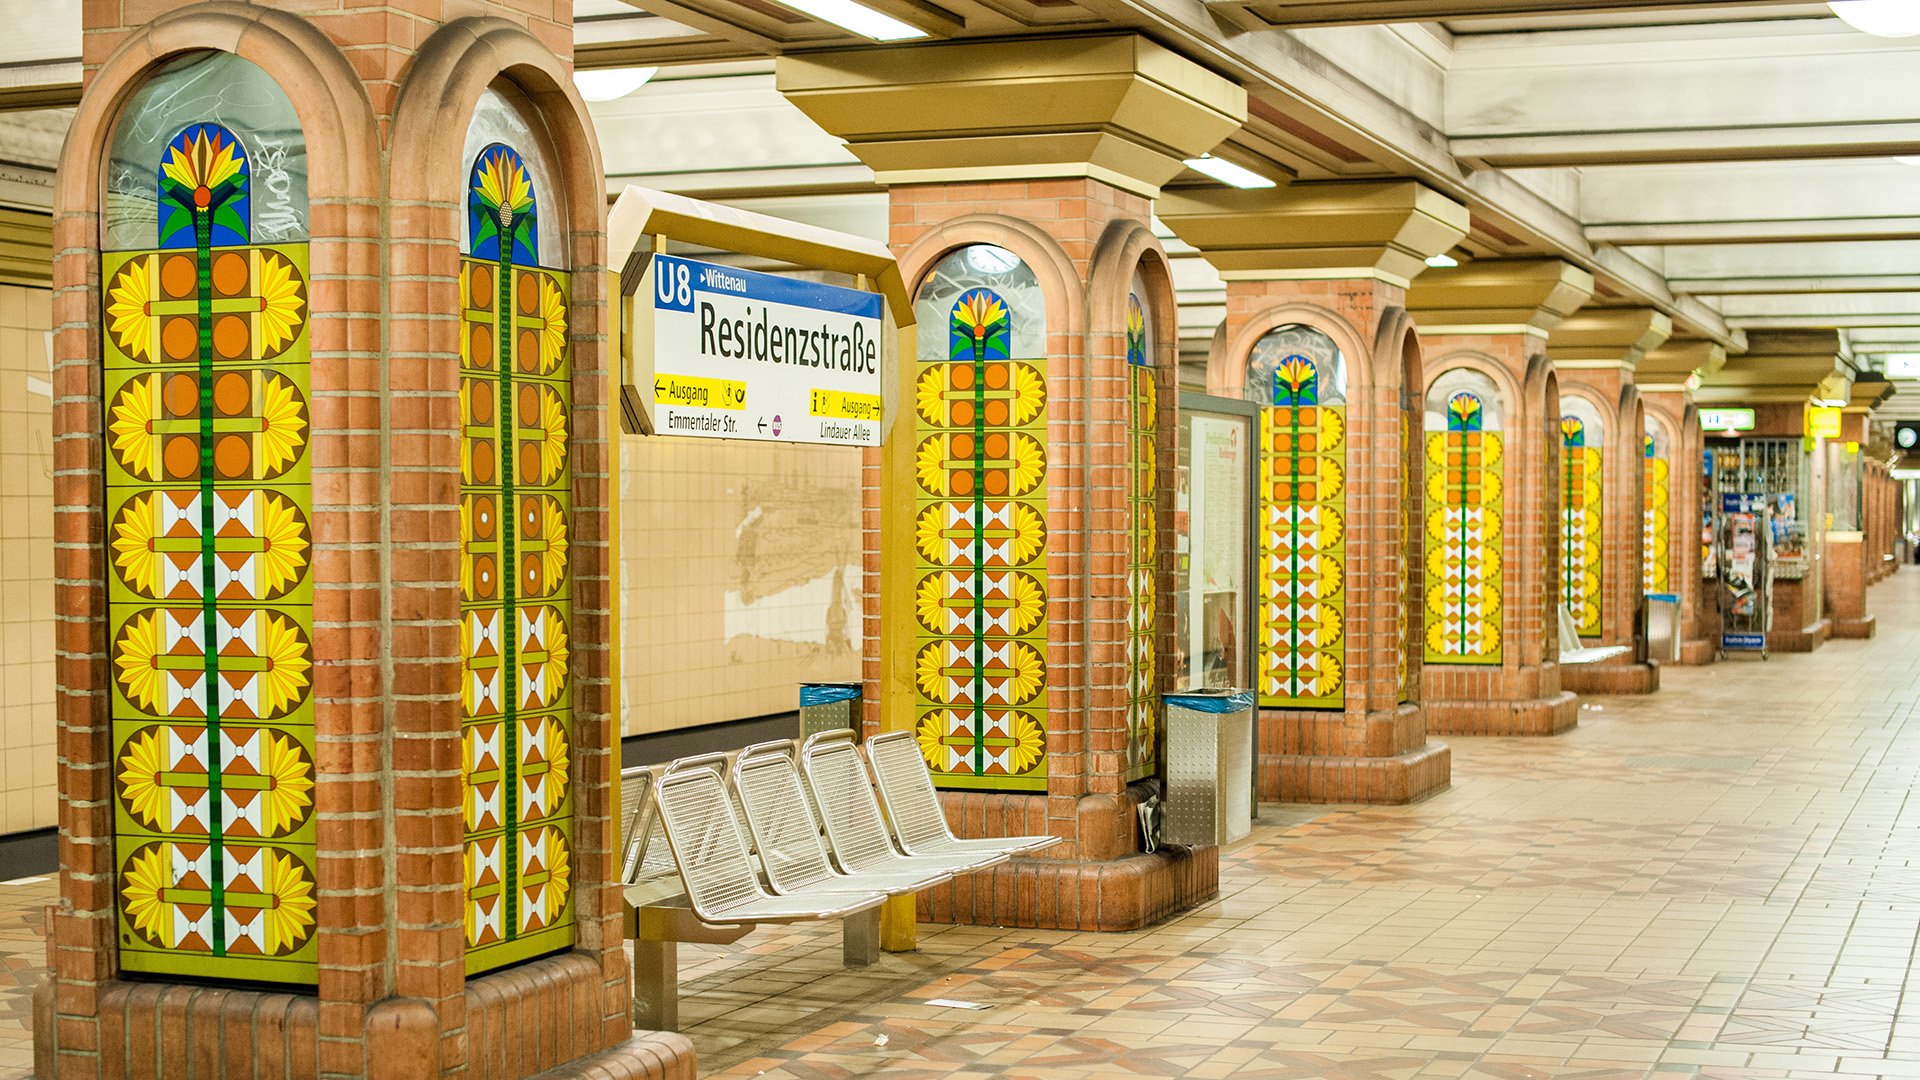 Der U-Bahnhof "Residenzstraße" im Stadtteil Reinickendorf in Berlin, fotografiert am 25.05.2014. (Quelle: dpa/Hauke-Christian Dittrich)